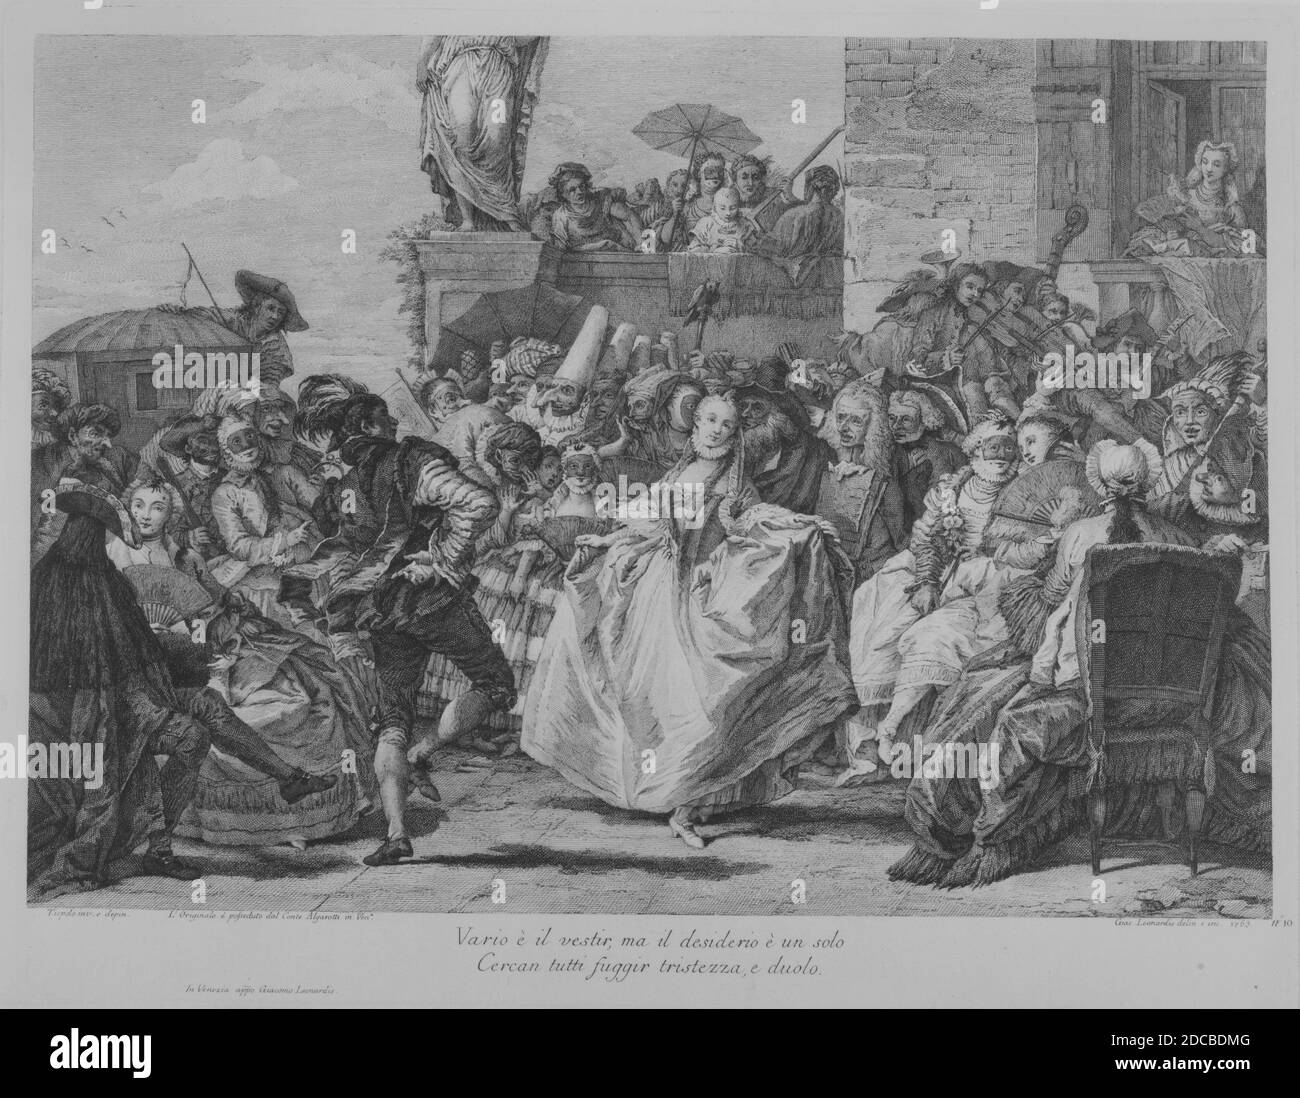 The Minuet, 1765. Stock Photo